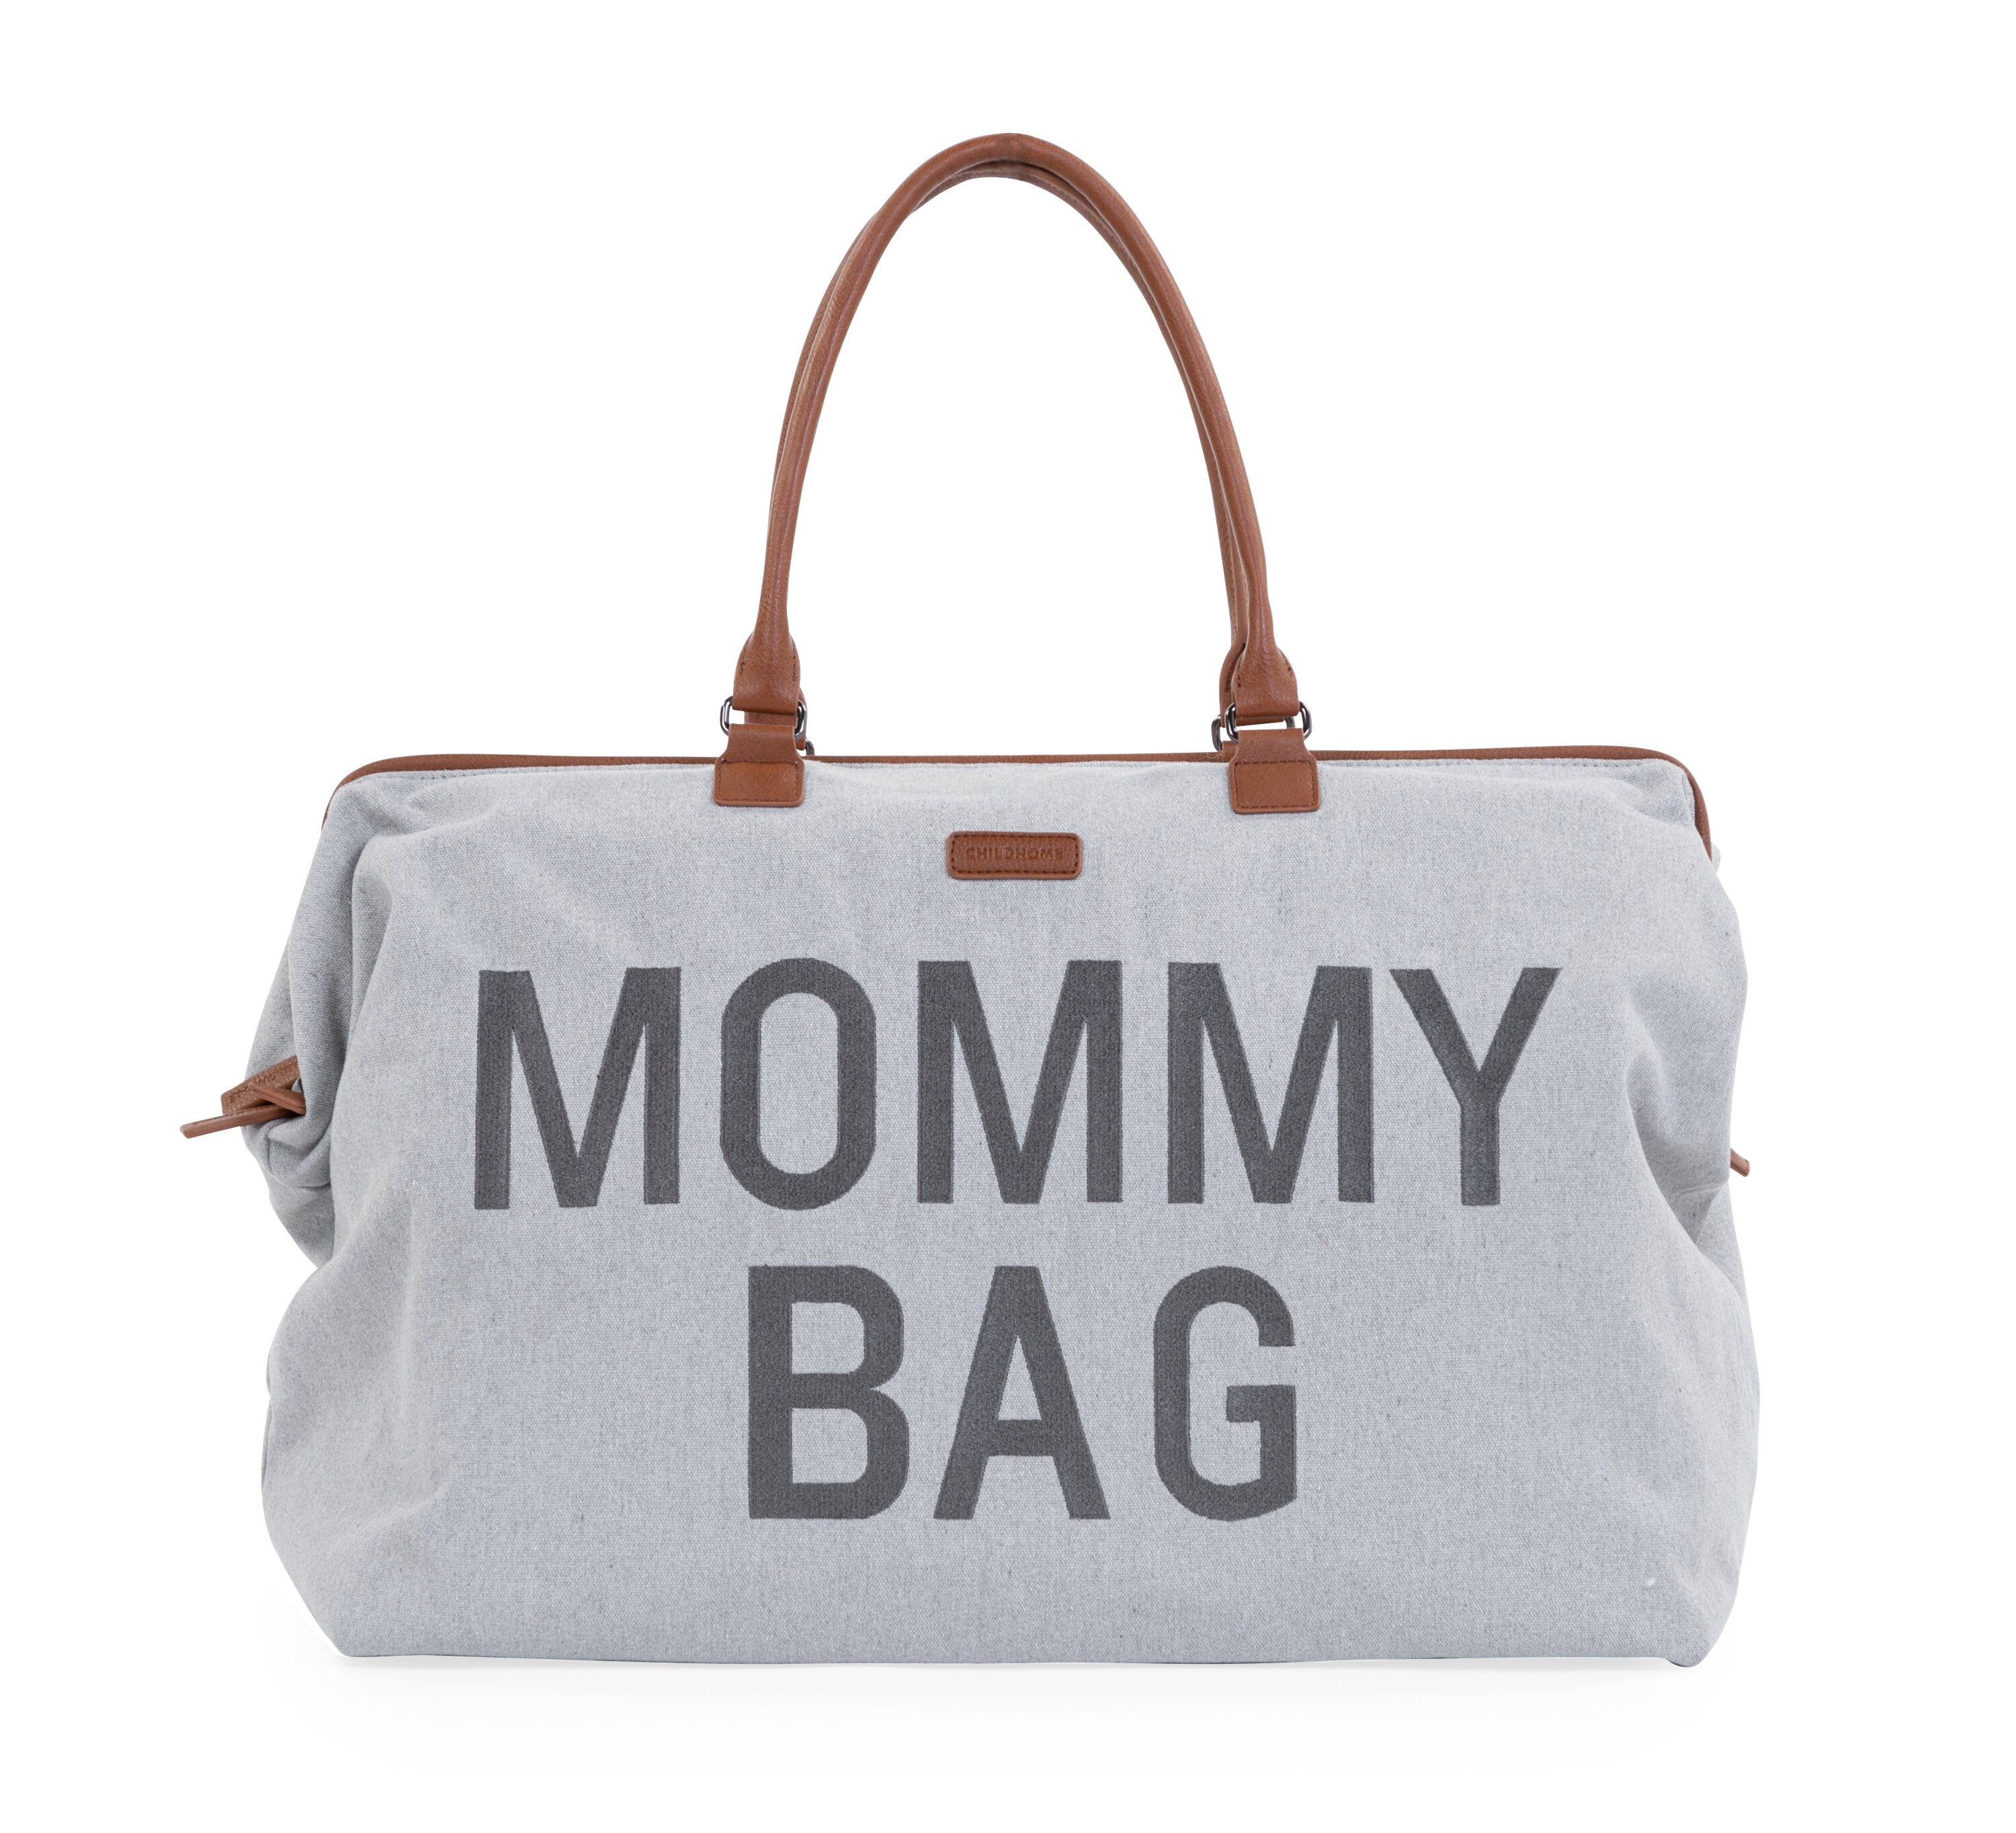 Přebalovací taška Mommy Bag Canvas Grey